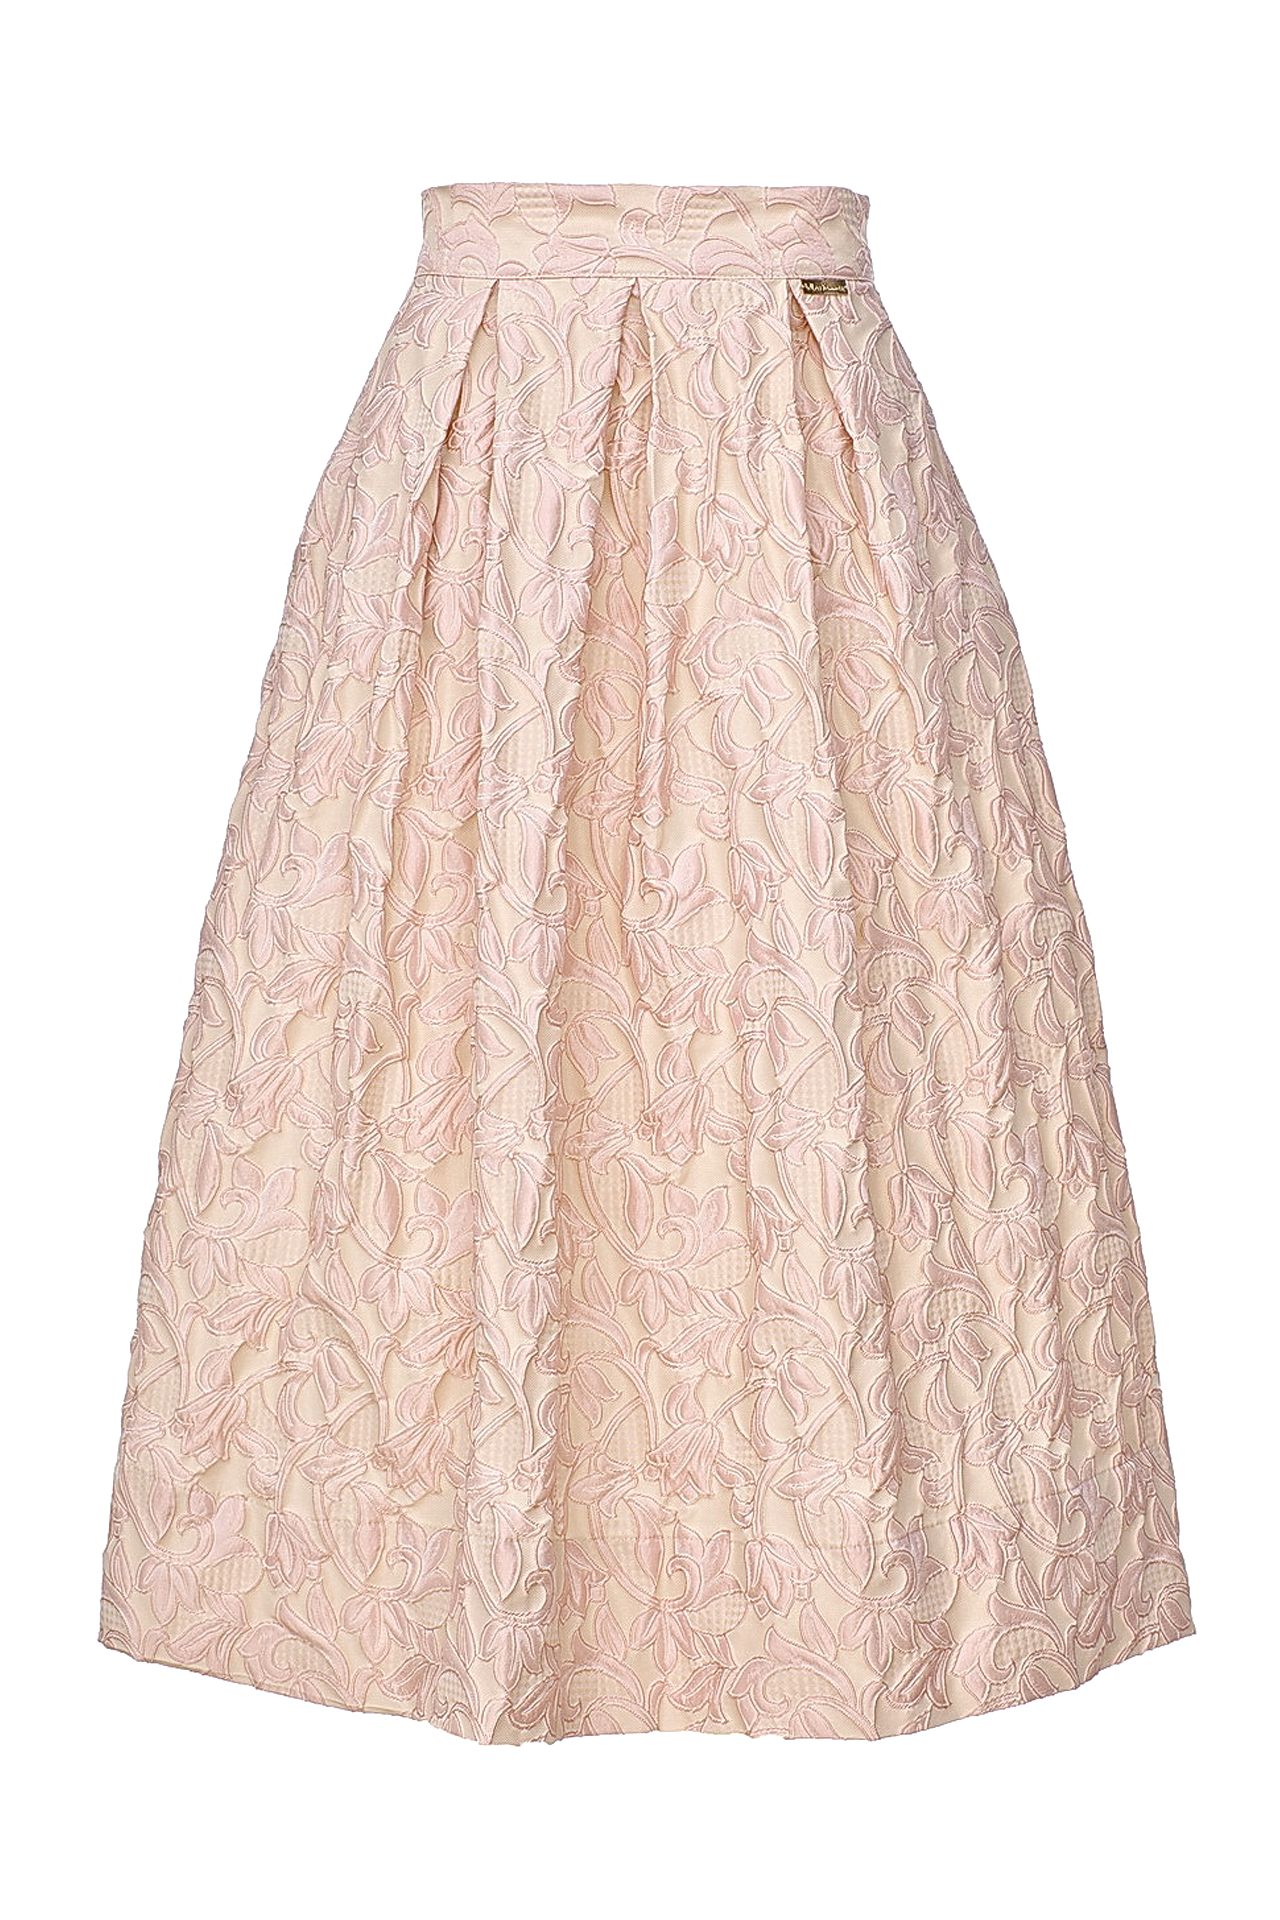 Одежда женская Юбка BABYLON W LES FEMMES (S610/14.2). Купить за 9250 руб.